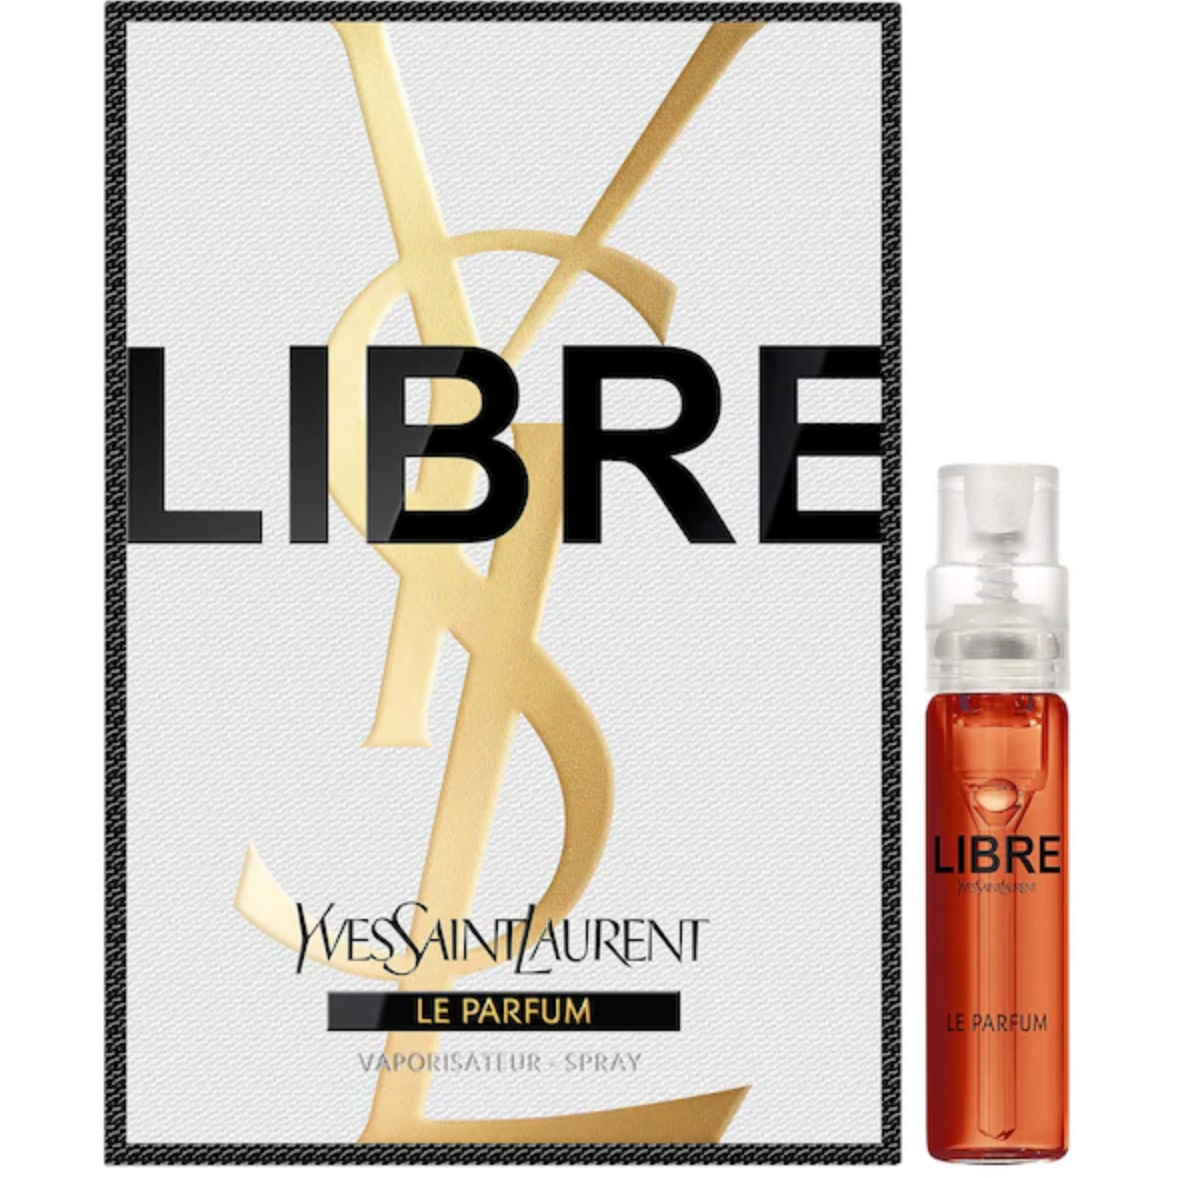 Yves Saint Laurent Libre Le Parfum for Women 2ml